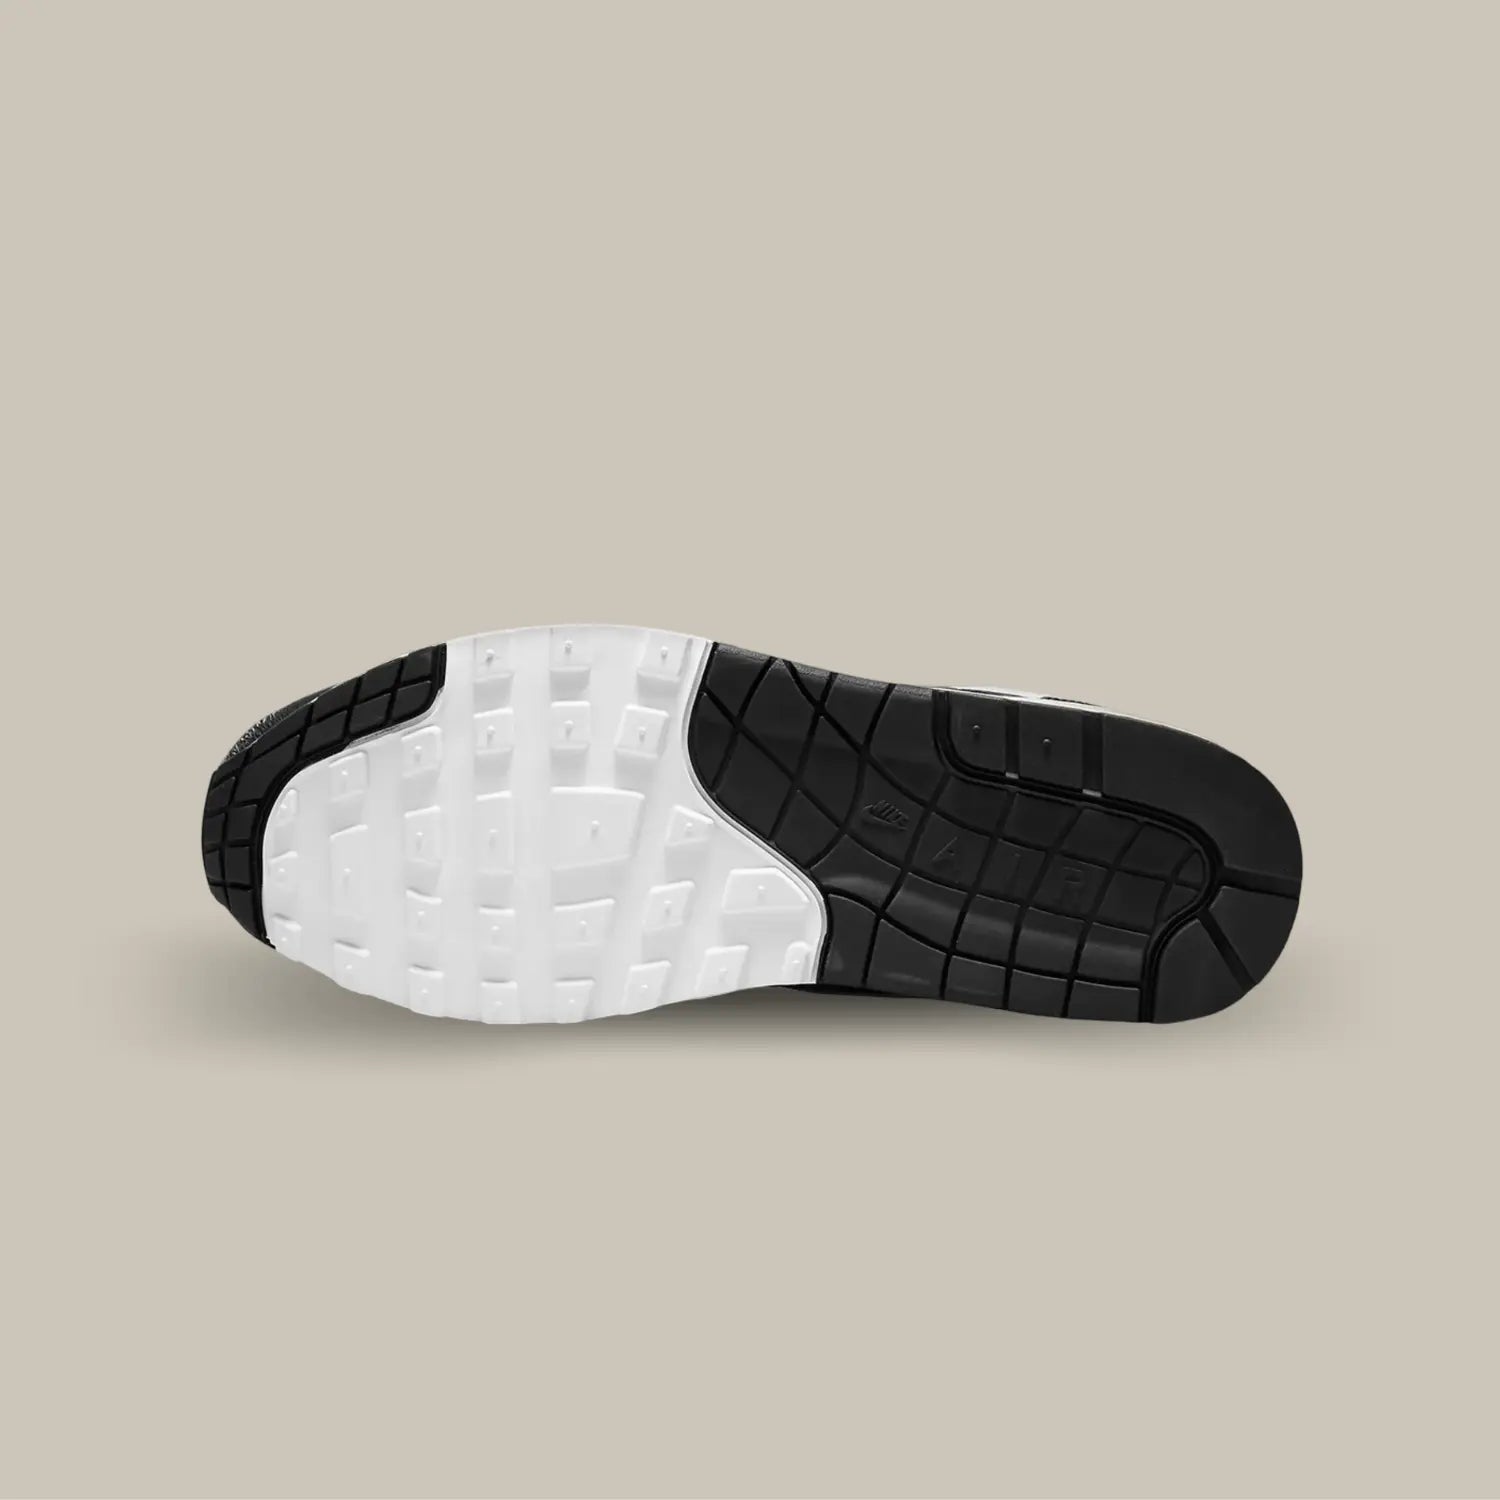 La semelle de la Nike Air Max 1 Patta Black Grey de couleur blanche et noire.